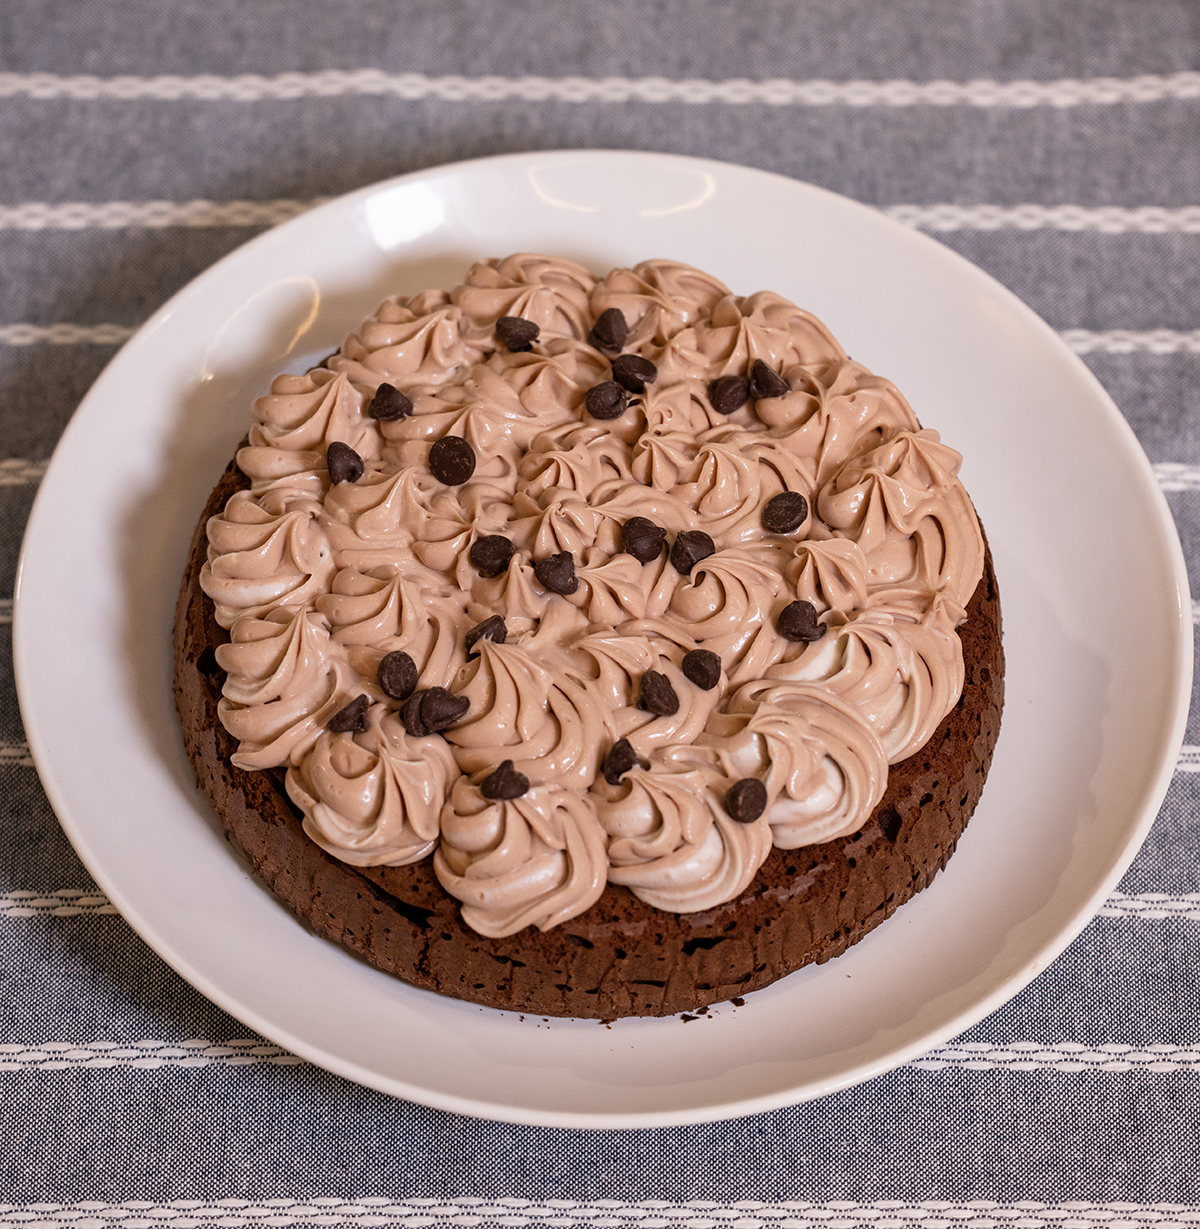 Chocolate Cake ketopanamausa